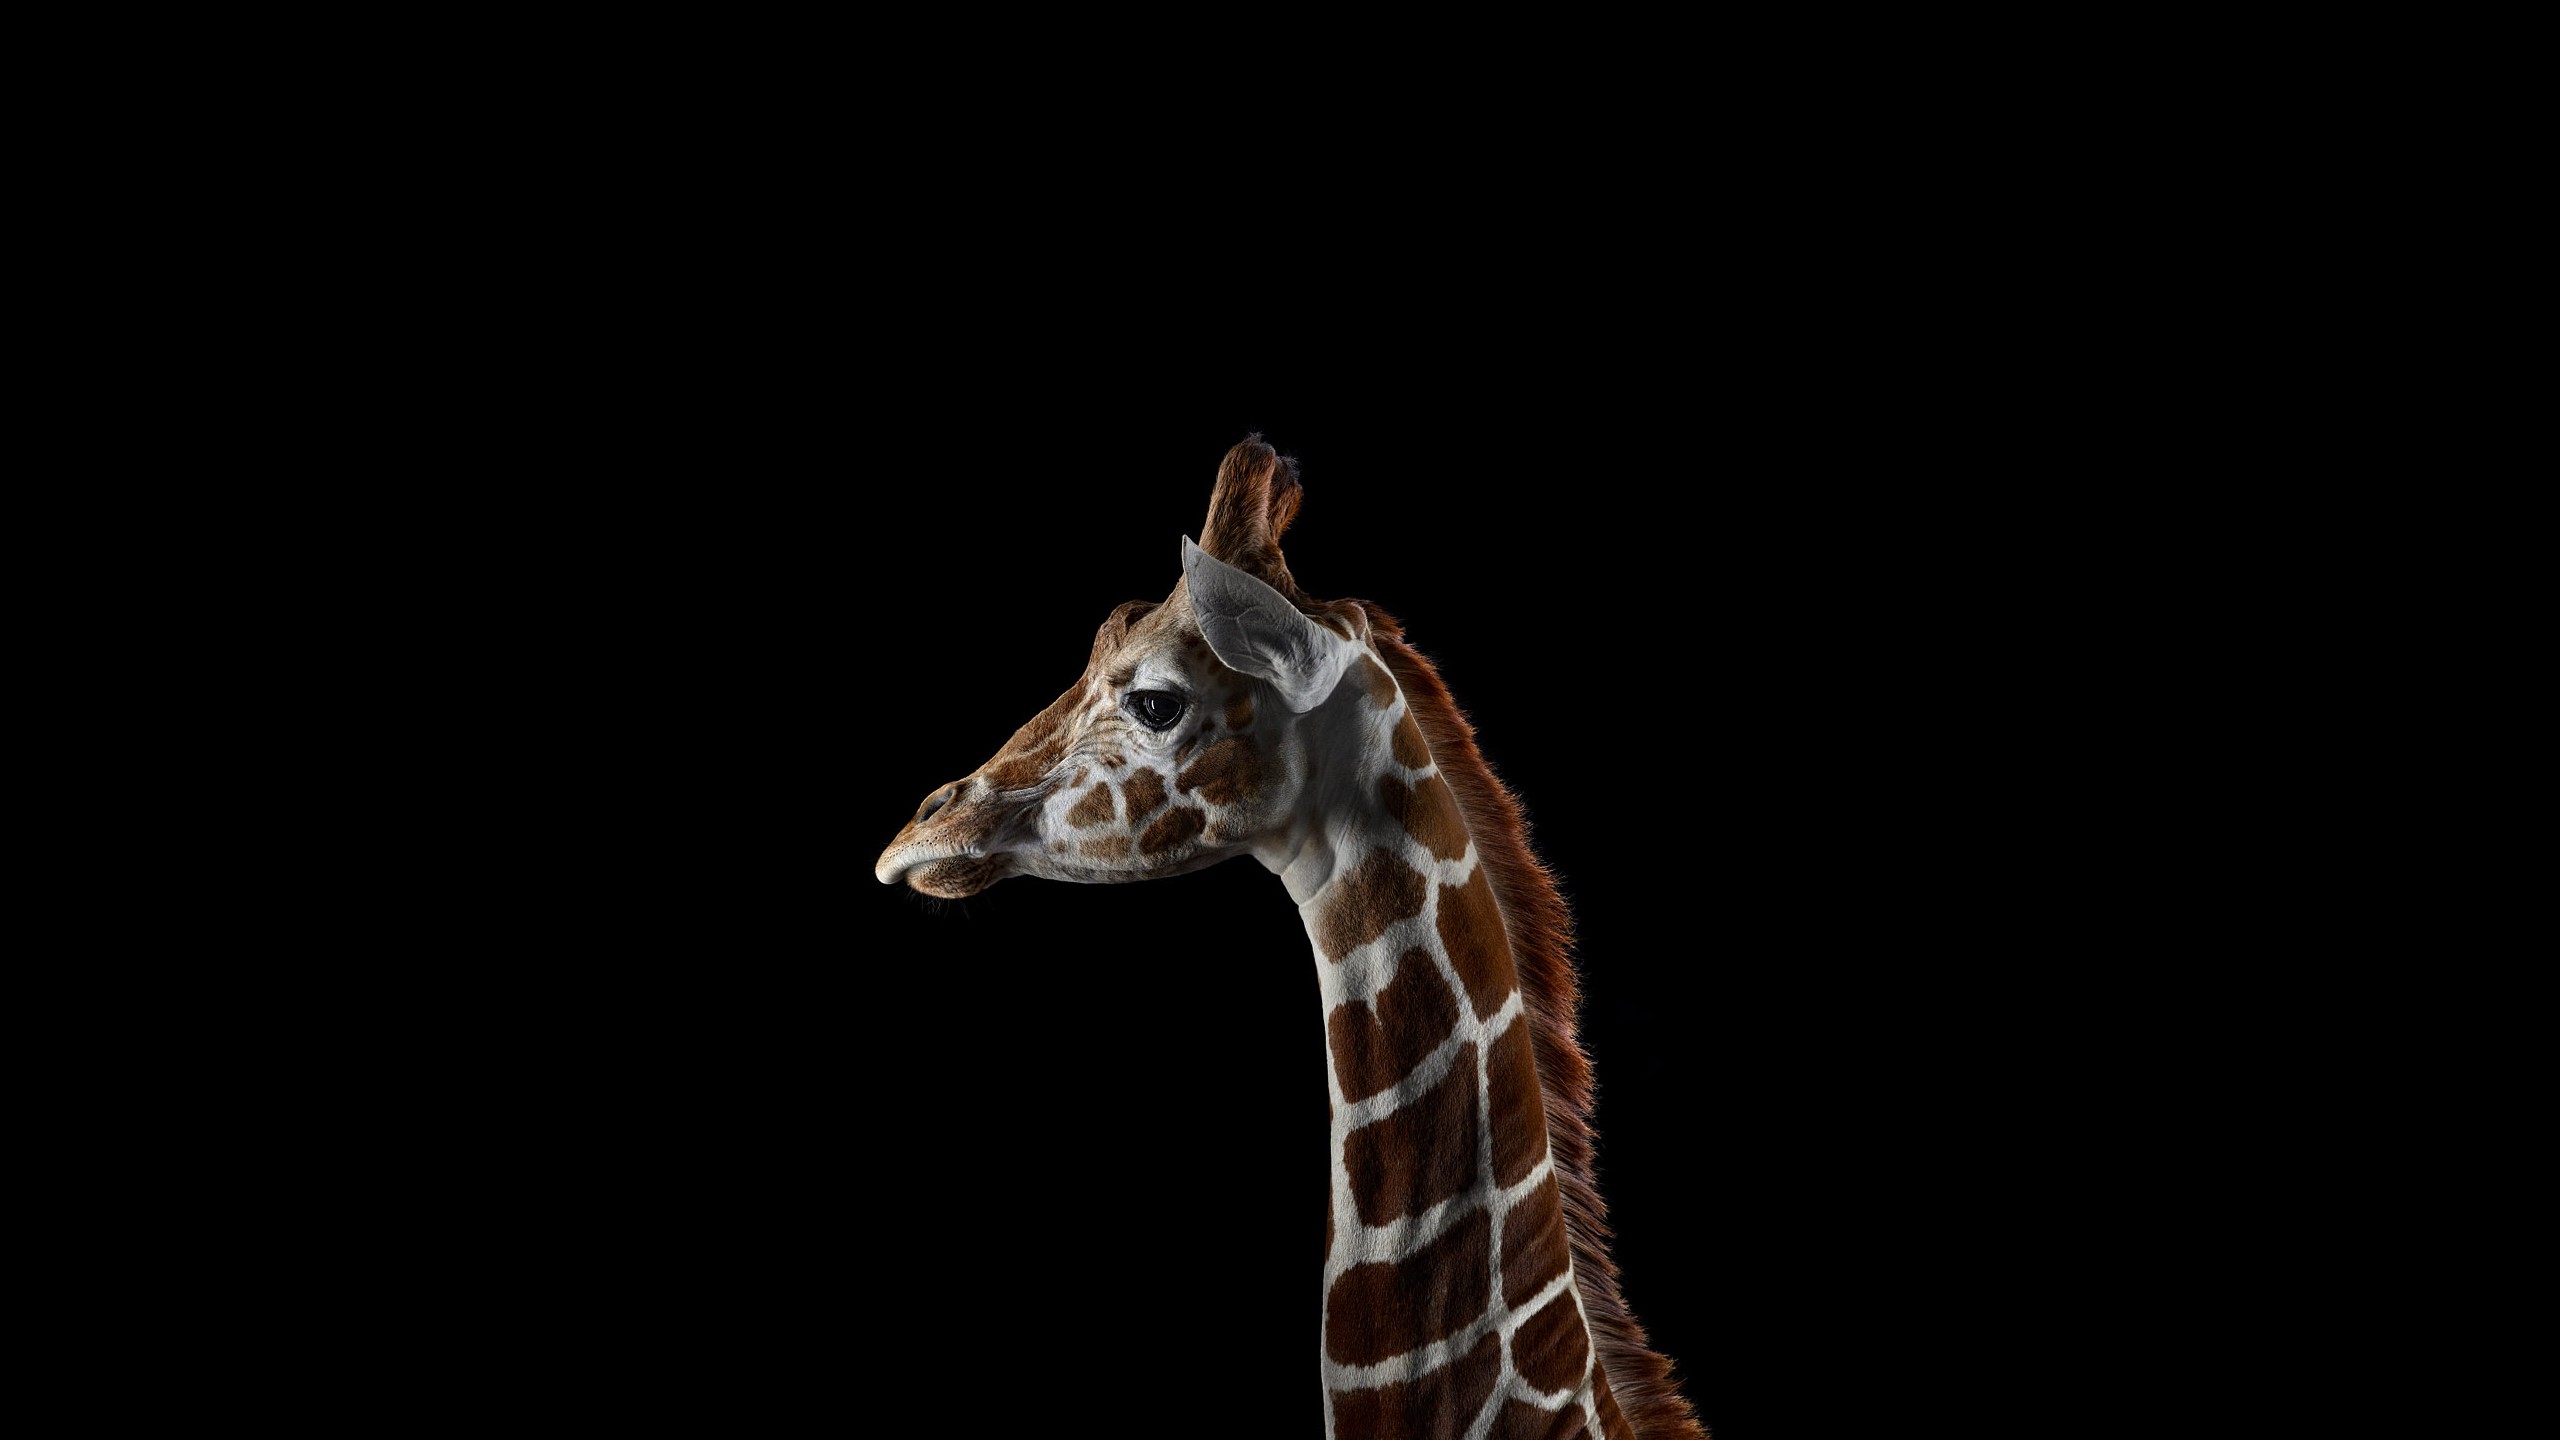 General 2560x1440 giraffes animals mammals simple background black background